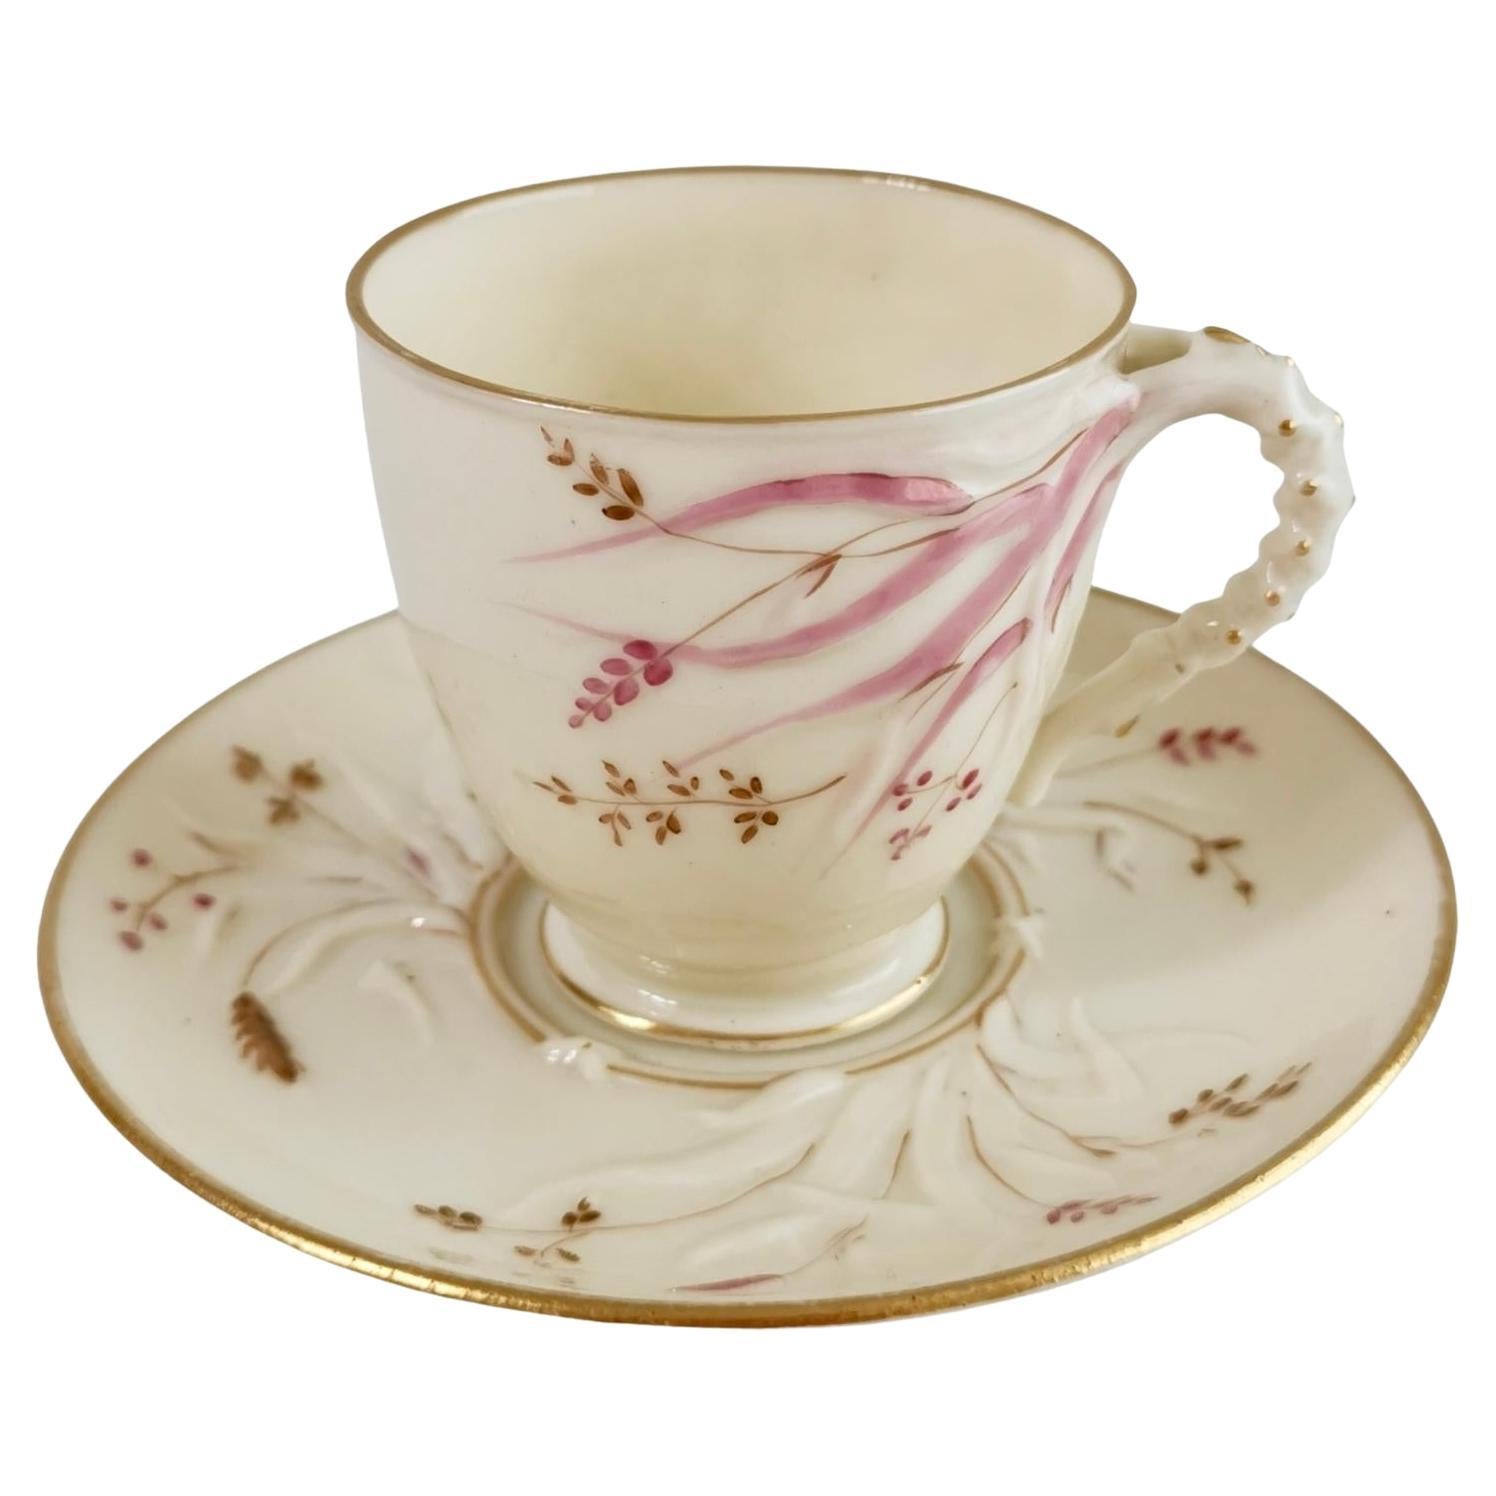 Belleek Porcelain Cup and Saucer, Grass Pattern, Victorian 1863-1891